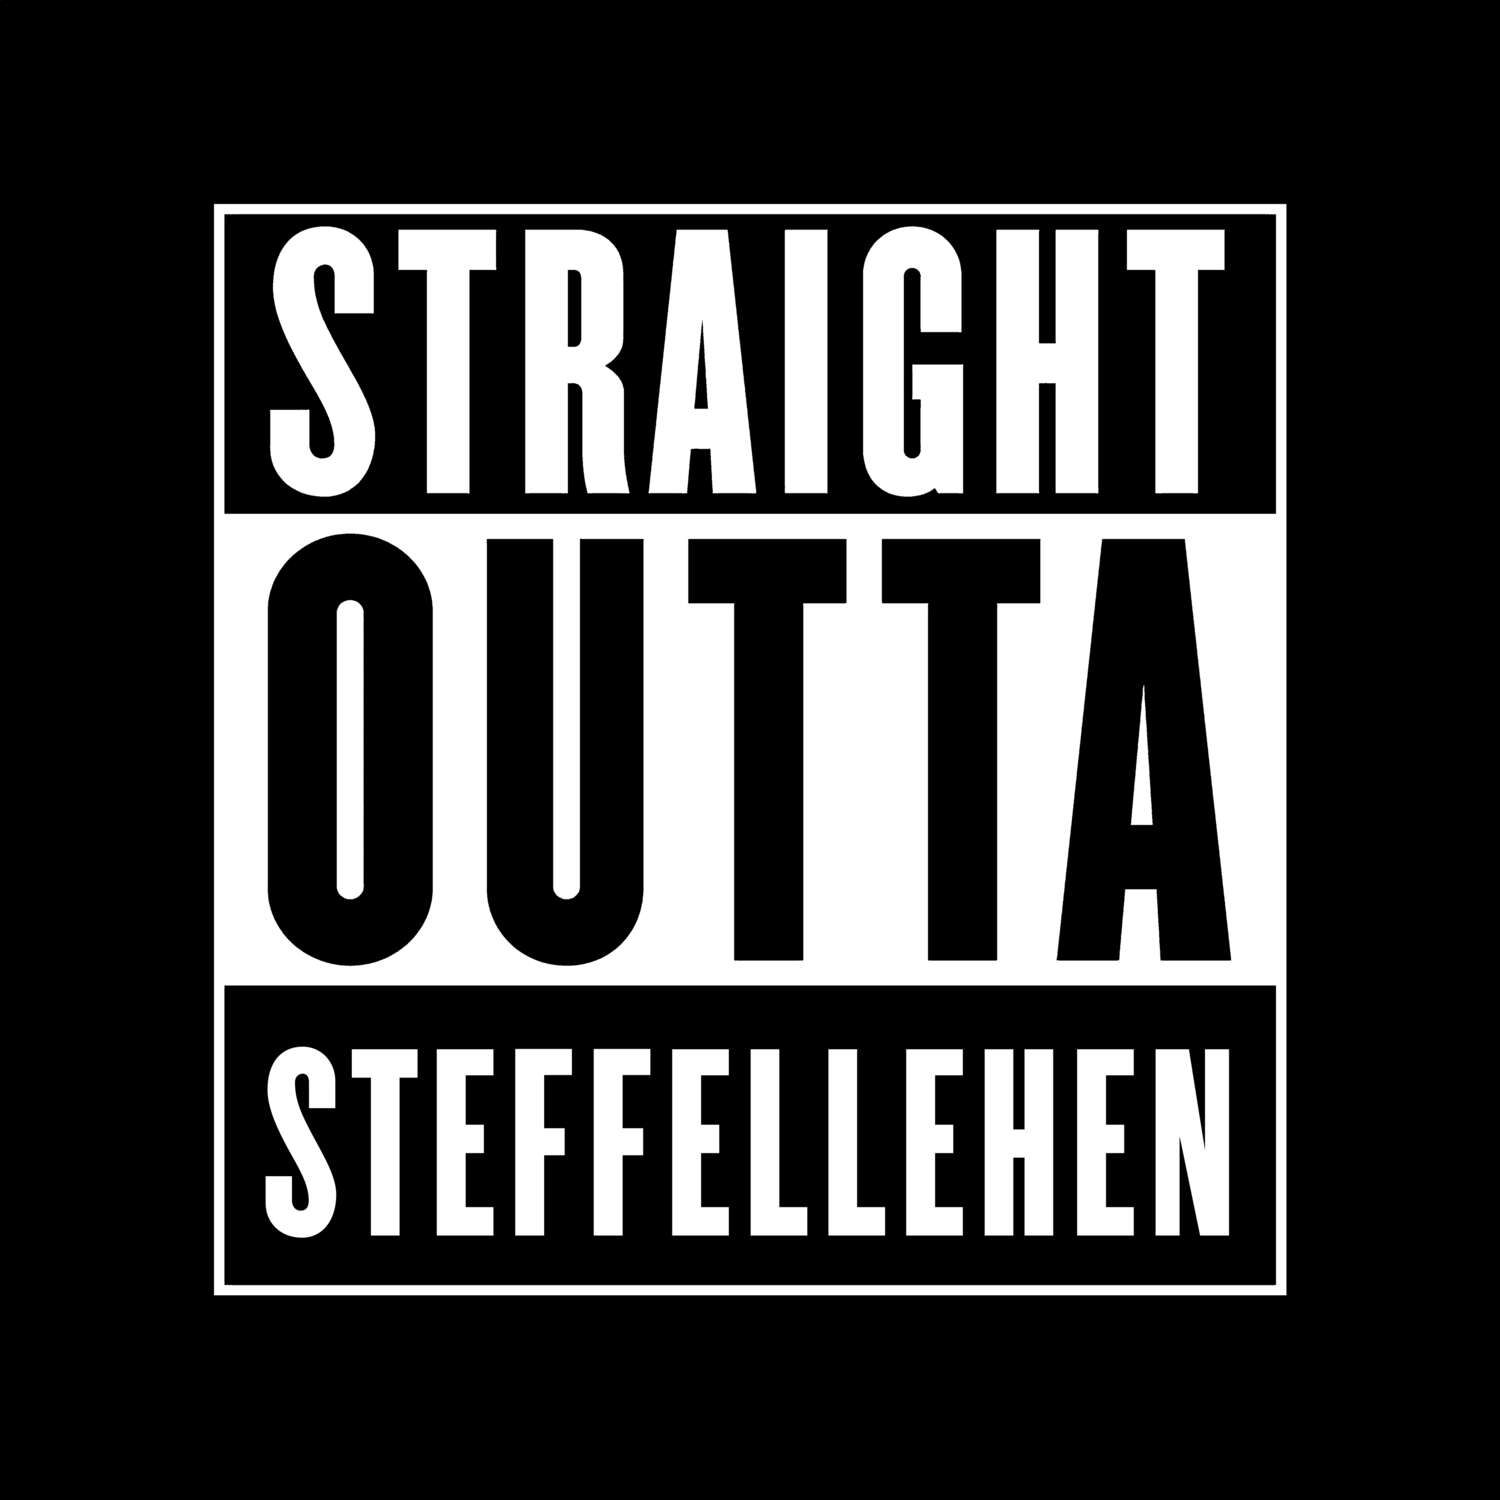 Steffellehen T-Shirt »Straight Outta«